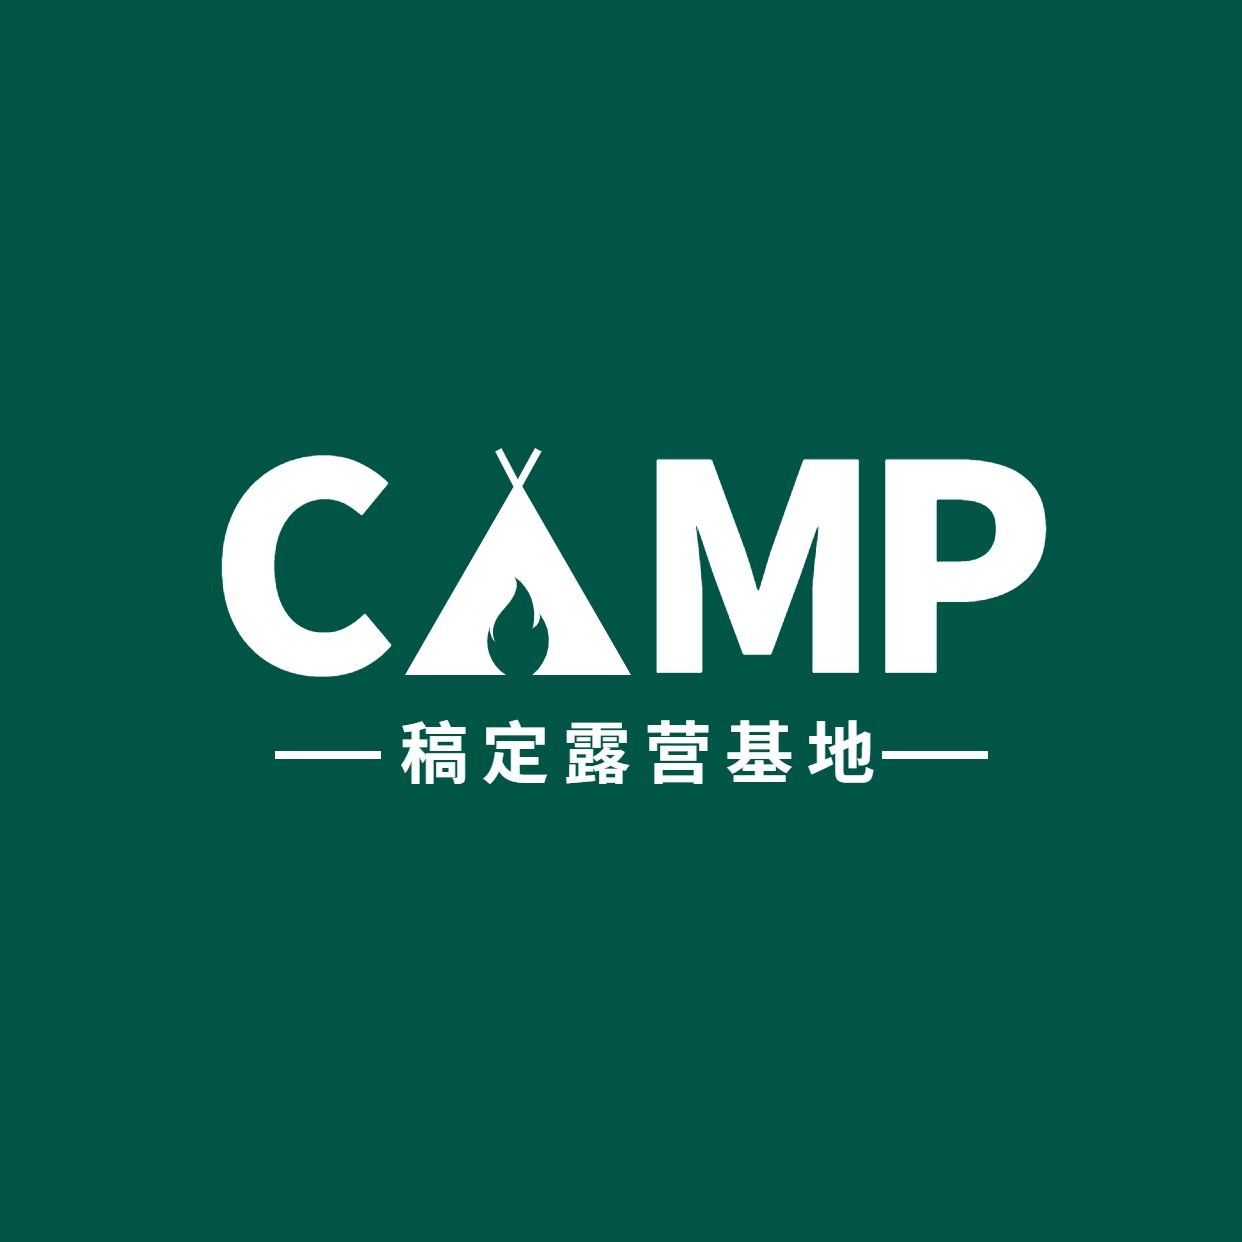 旅游露营房车logo设计